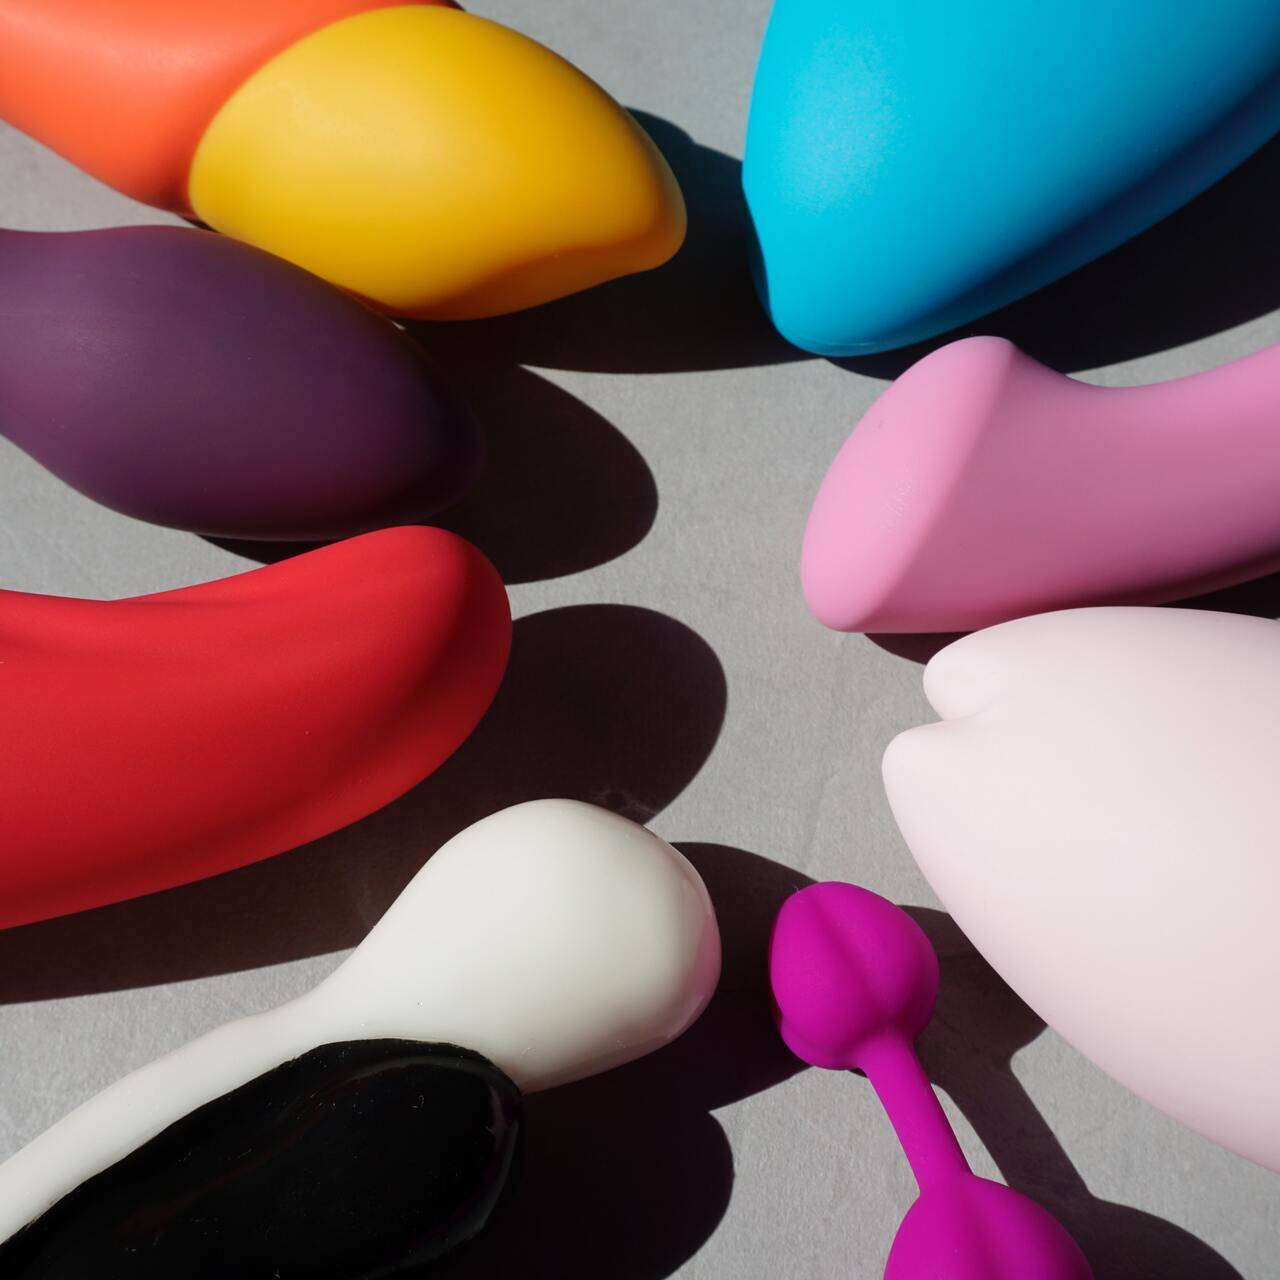 8 секс-игрушек, которые каждая женщина должна попробовать хотя бы раз в жизни